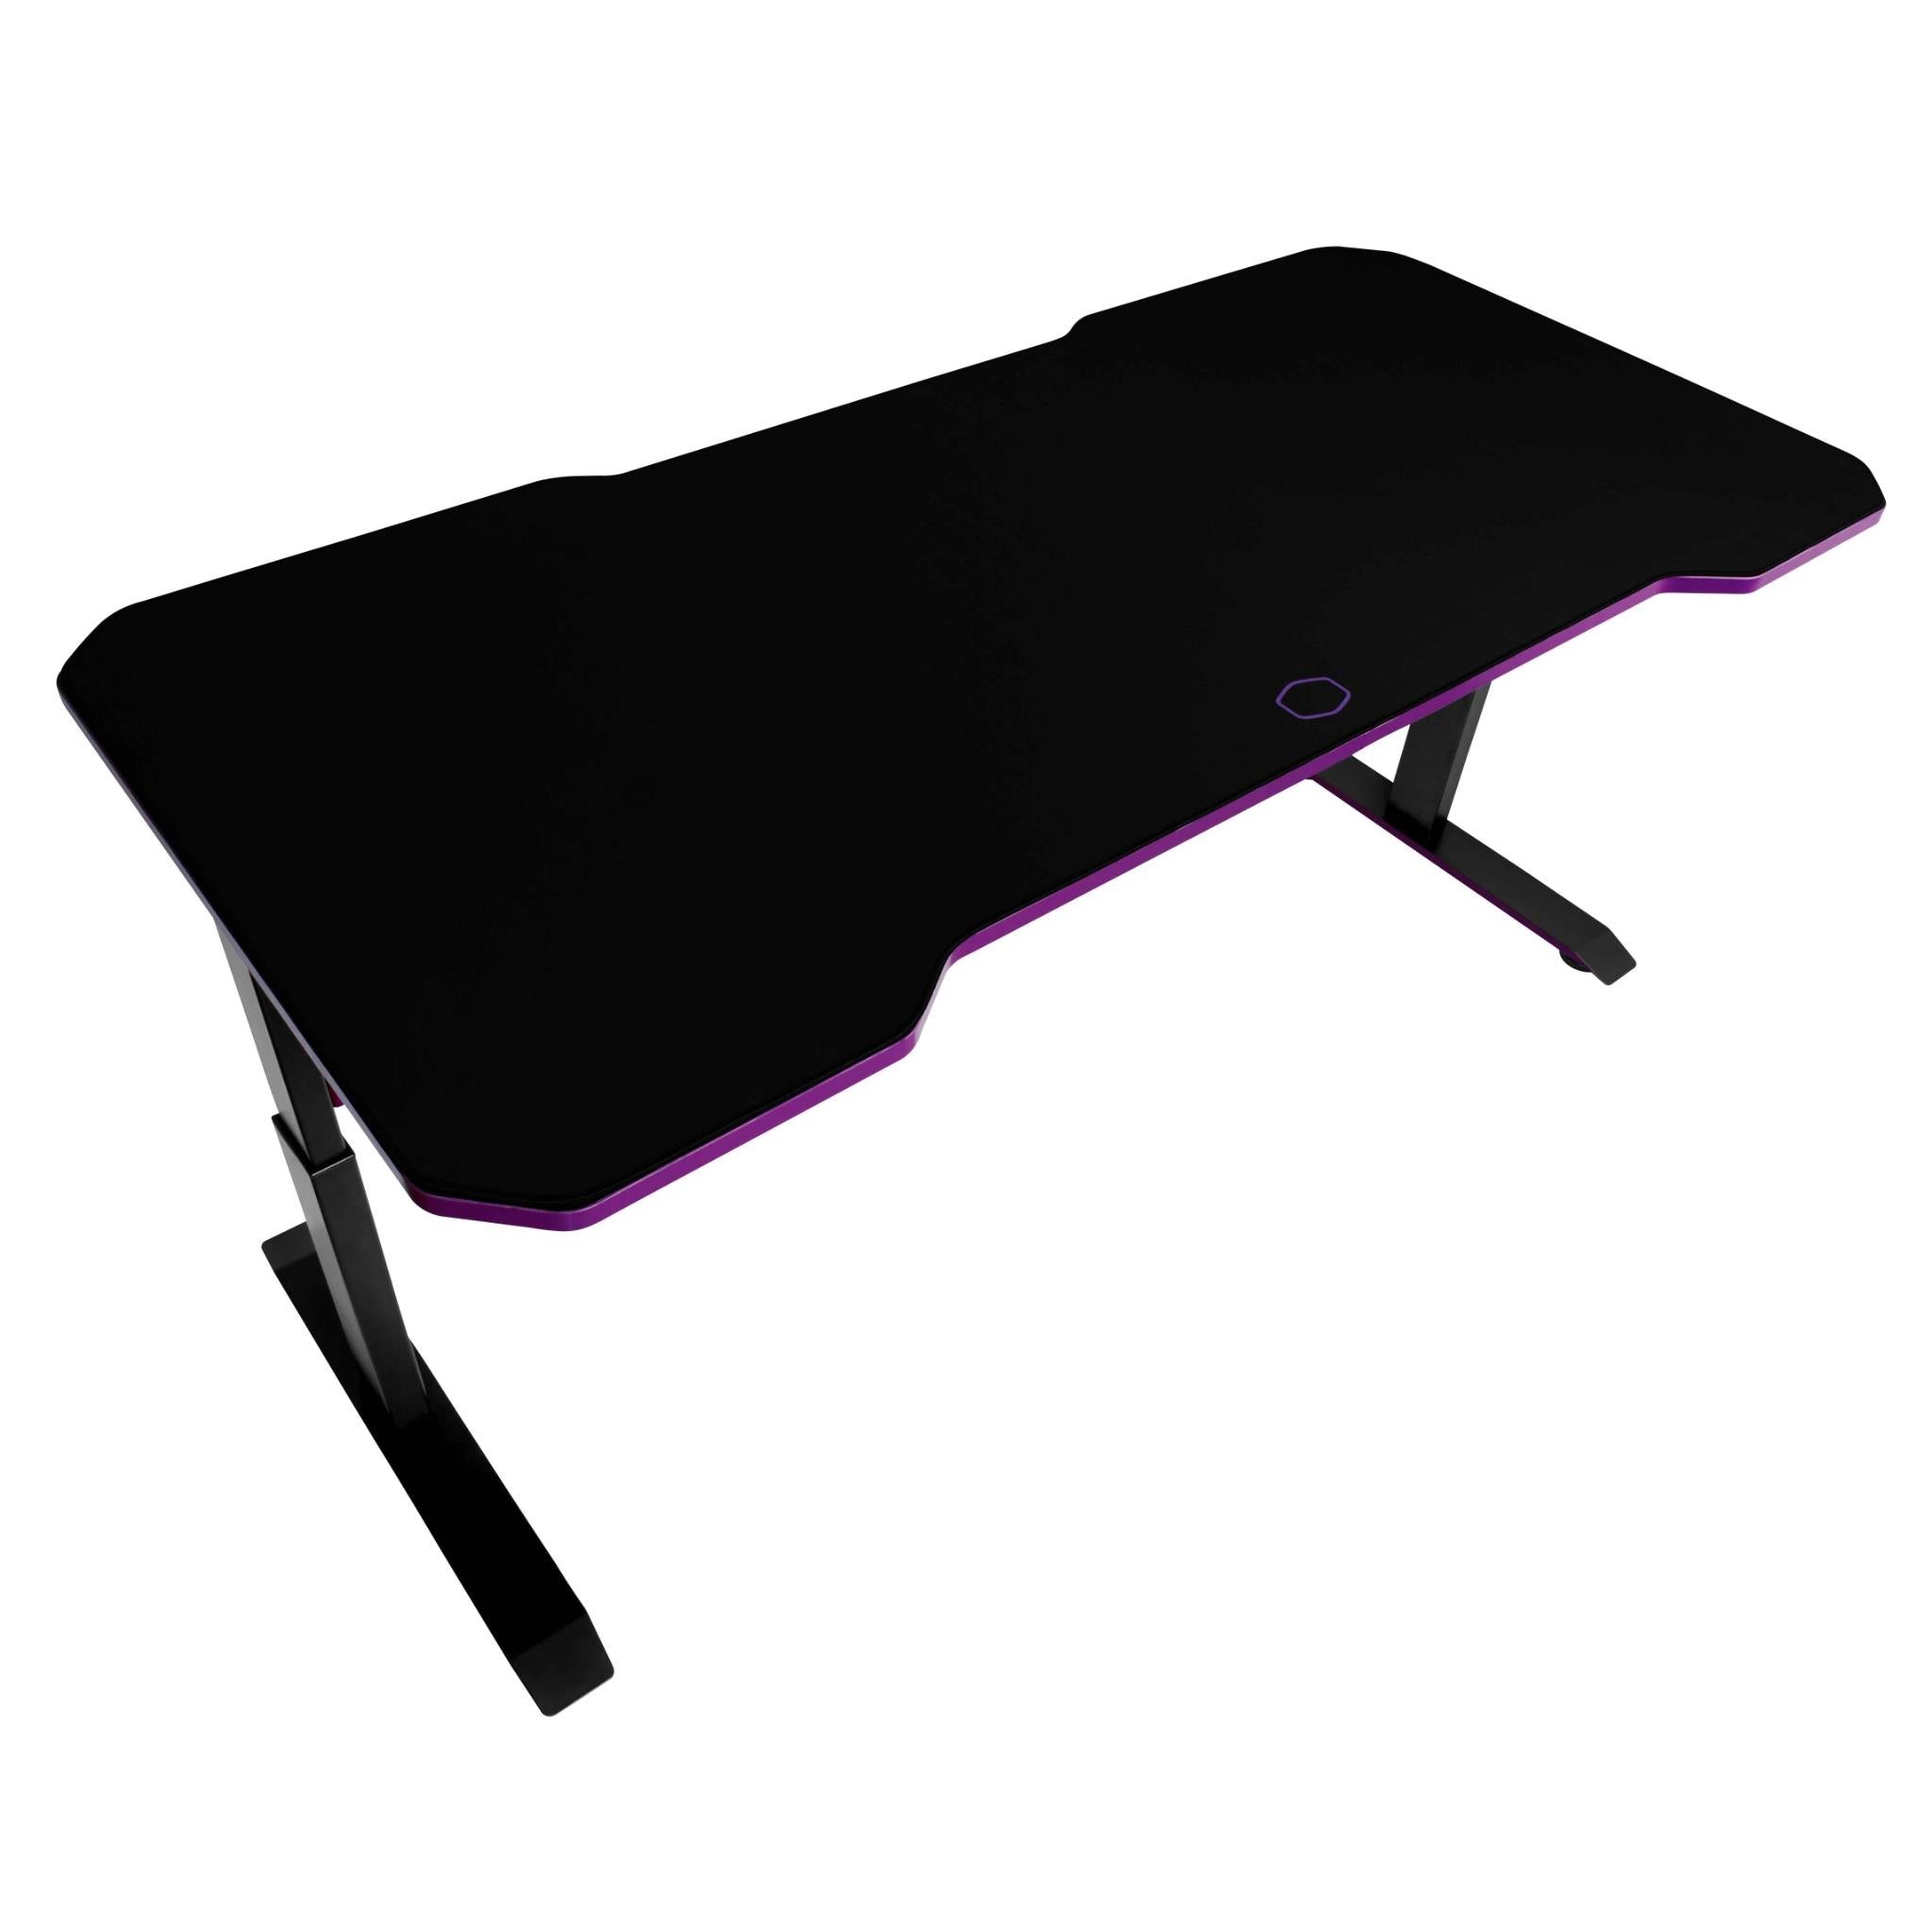 cooler mastergd160 gaming table/desk black / purple